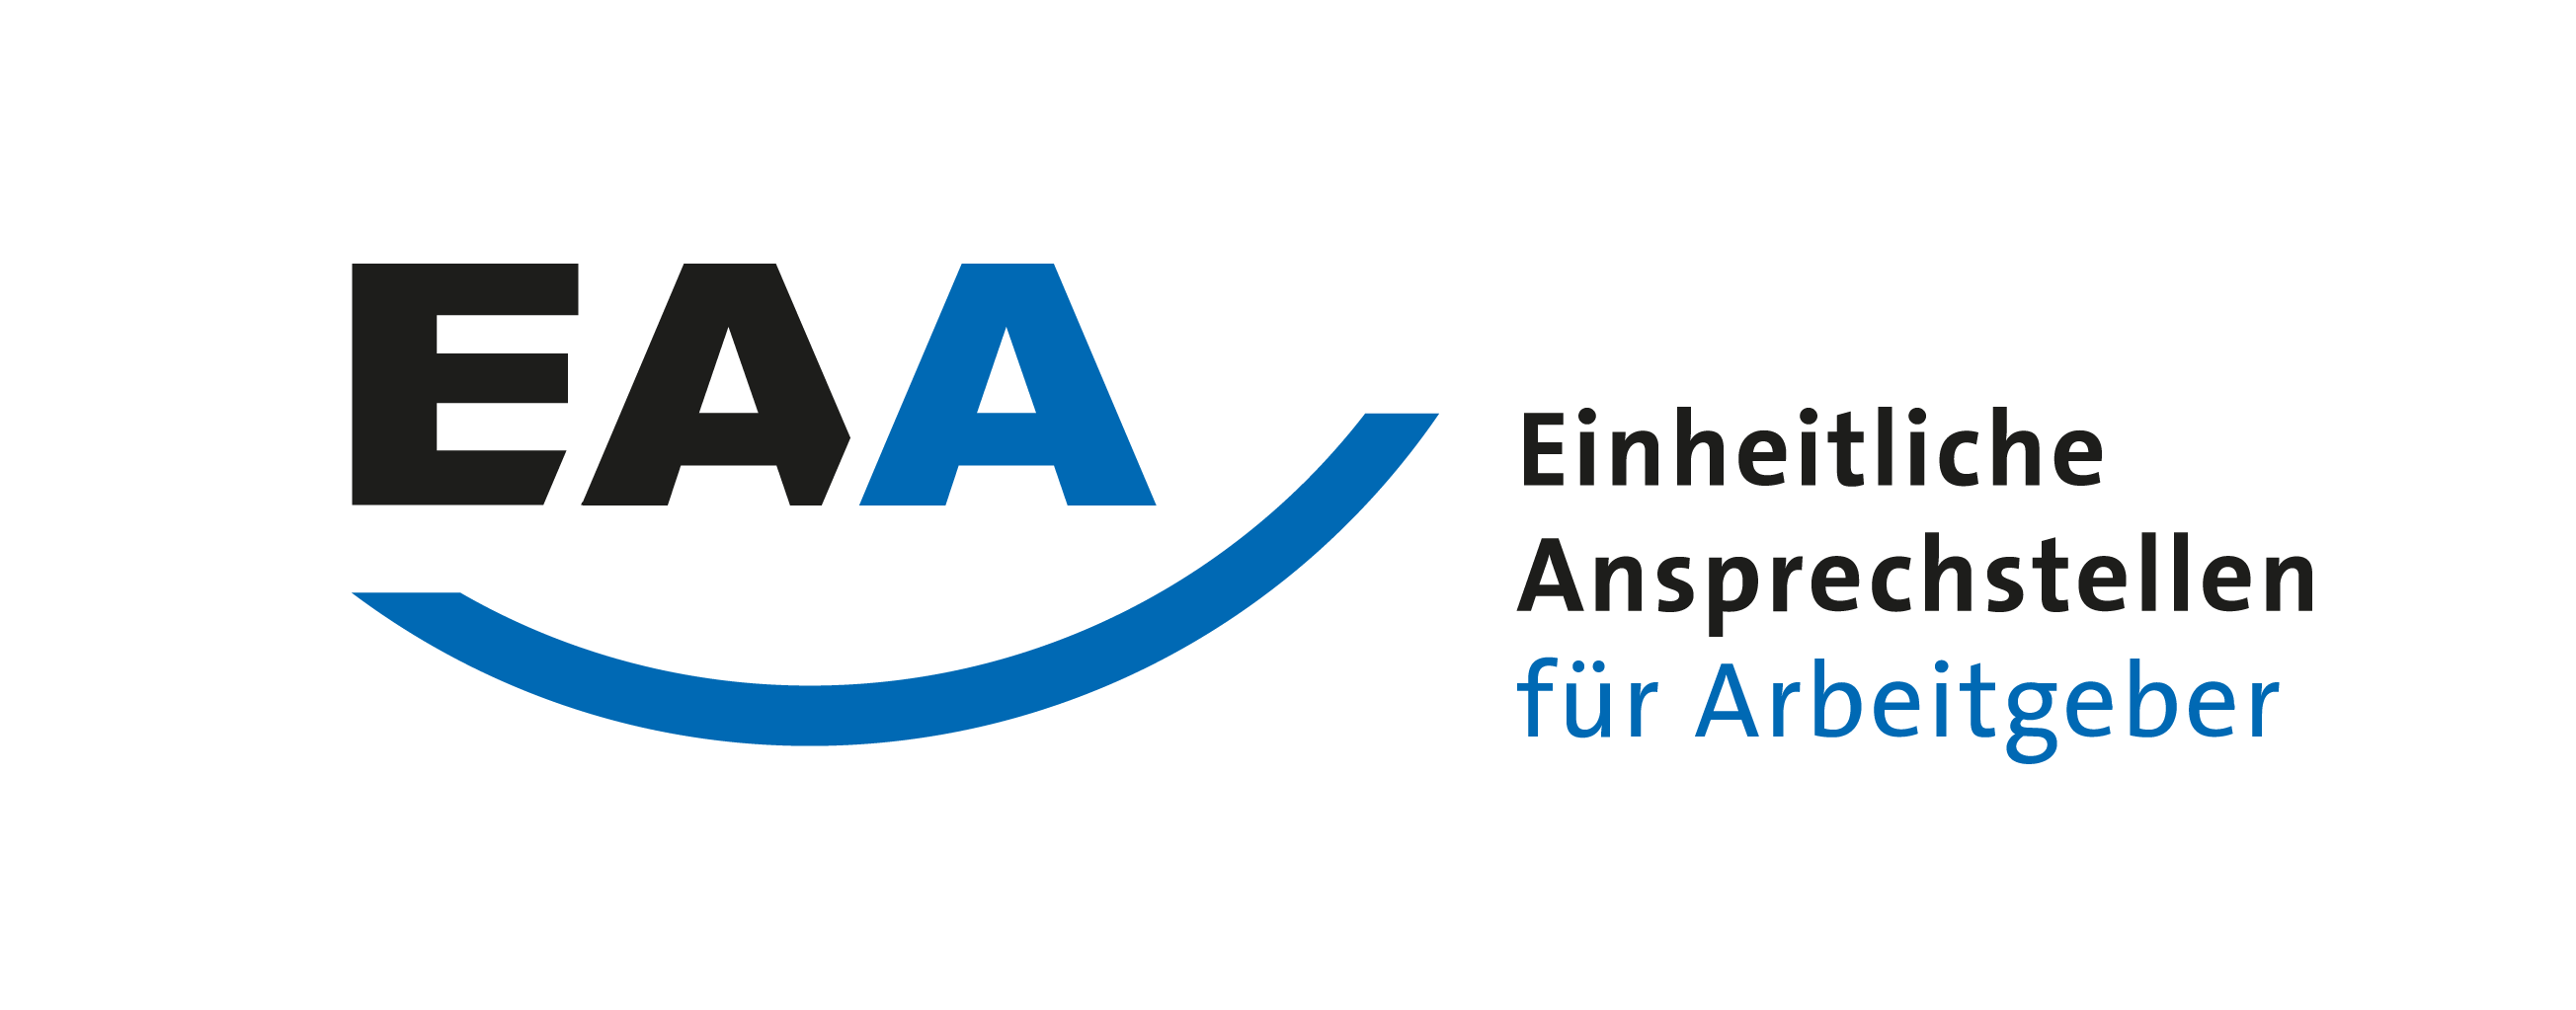 werkgemeinschaft_Beruflich planen_EAA_Logo